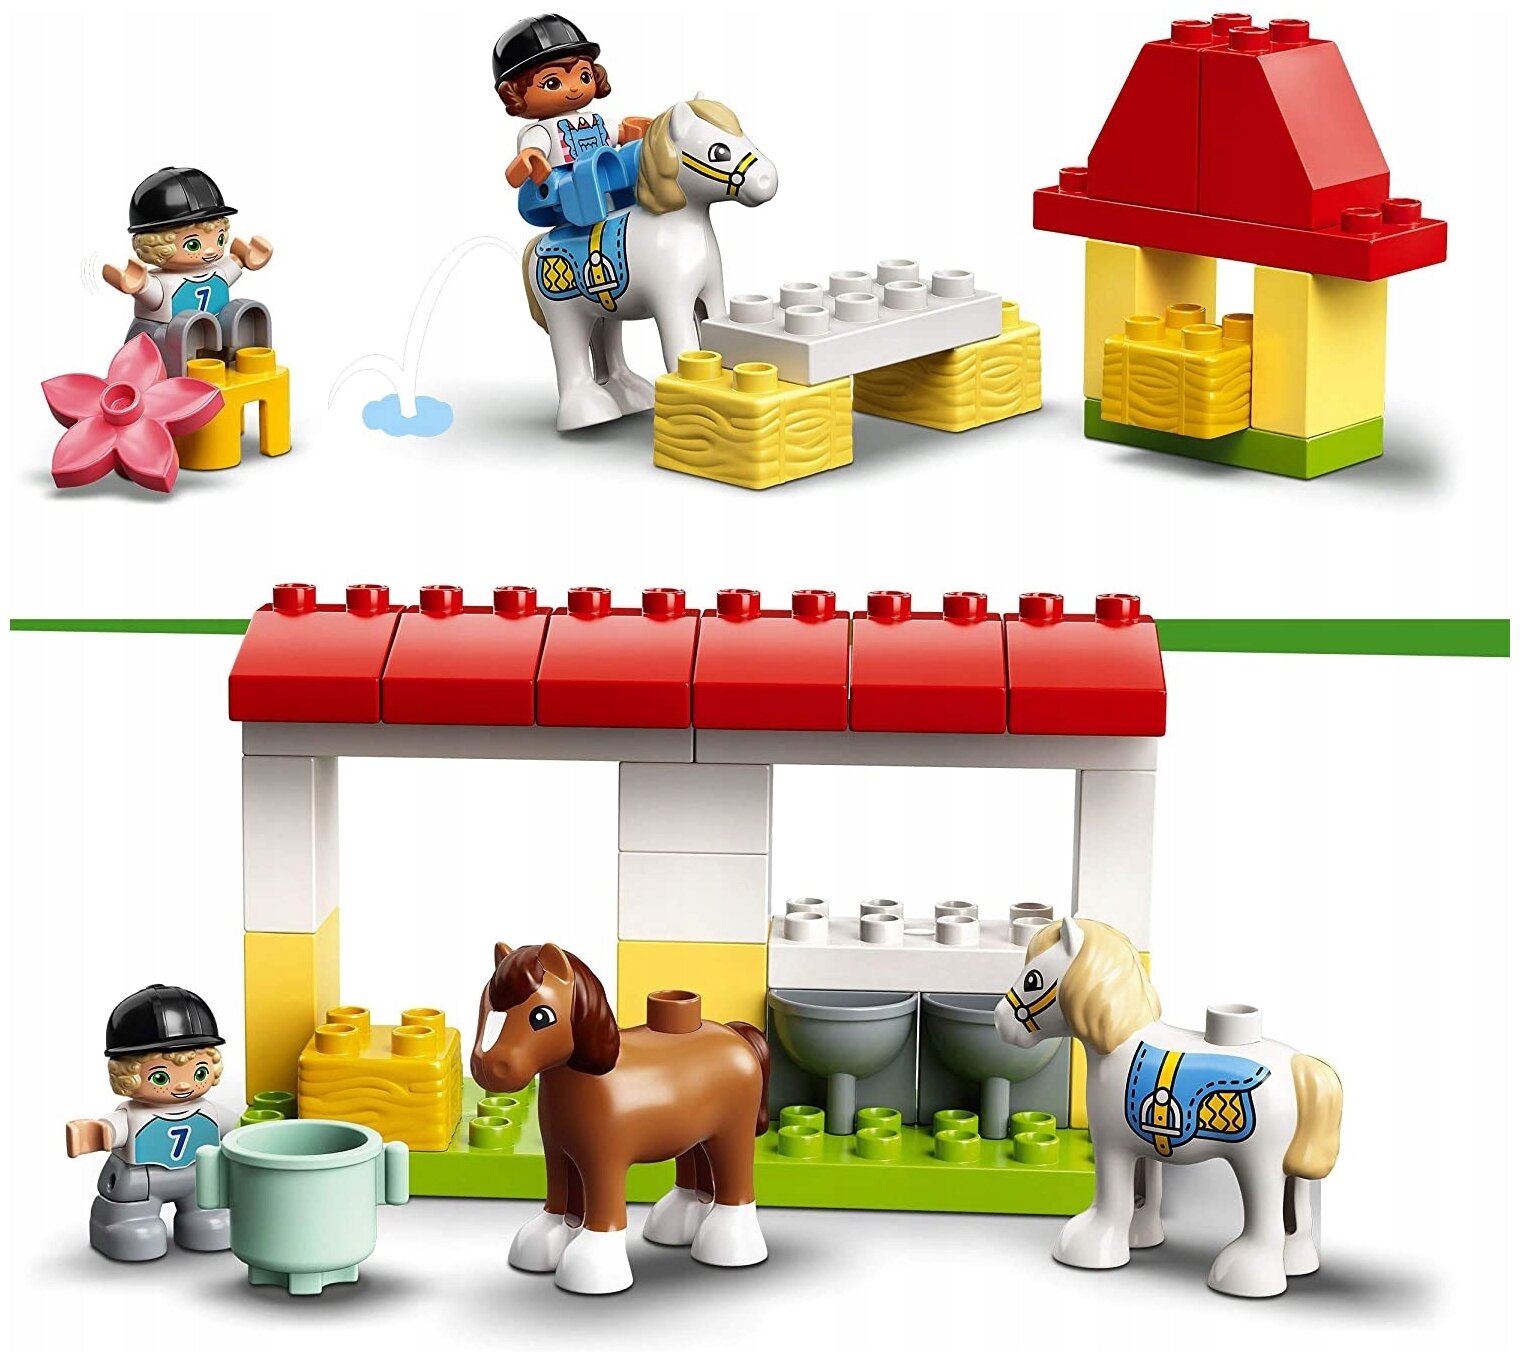 Конструктор Lego DUPLO Town Конюшня для лошади и пони (элем.:65) пластик (2+) (10951) - фото №2